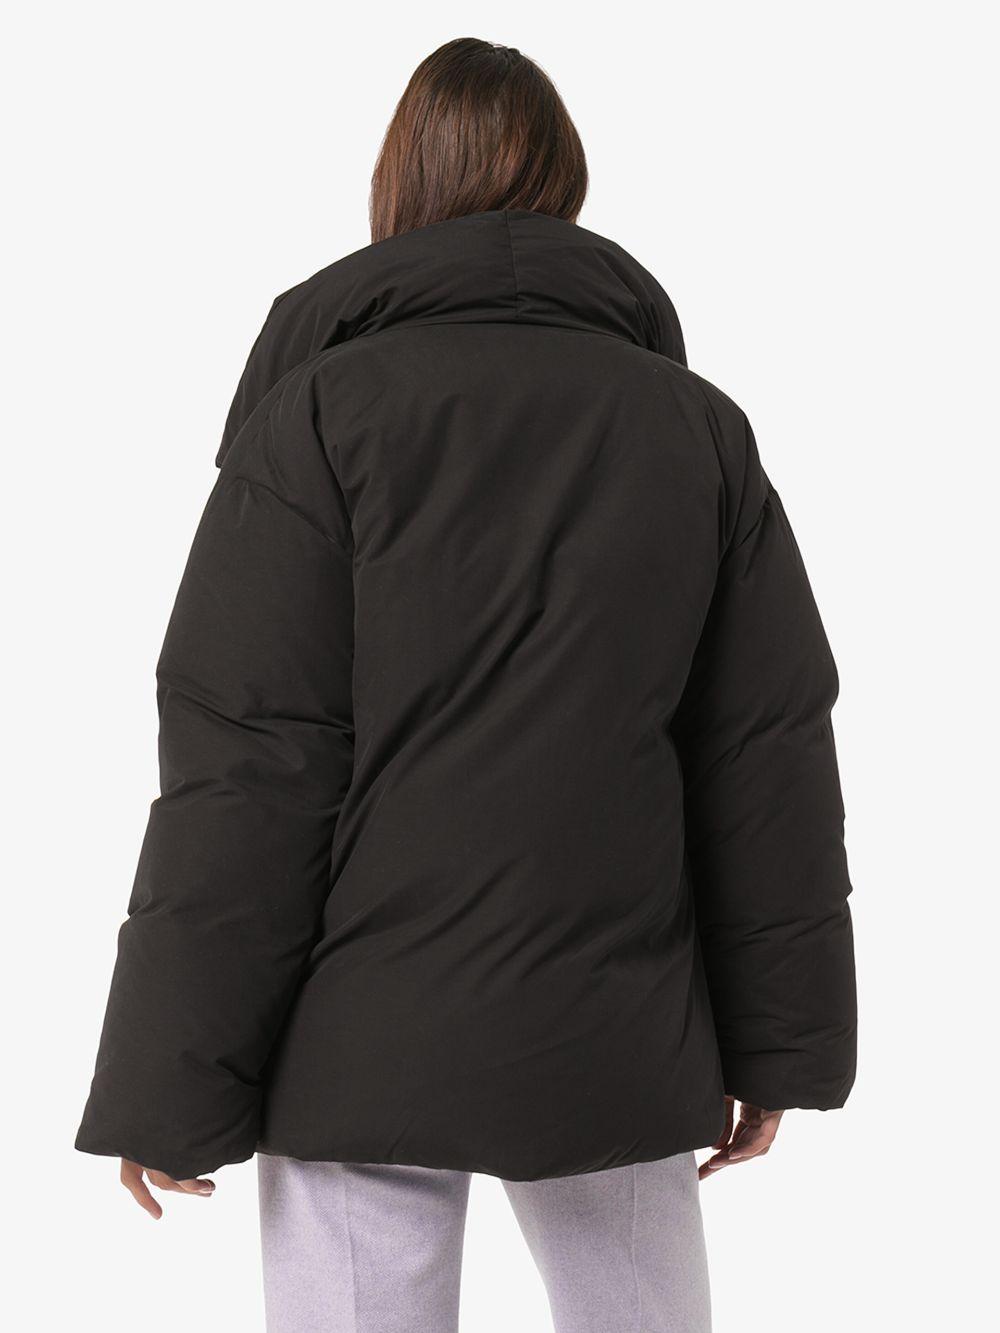 Totême Totême Annecy Puffer Jacket in Black - Lyst